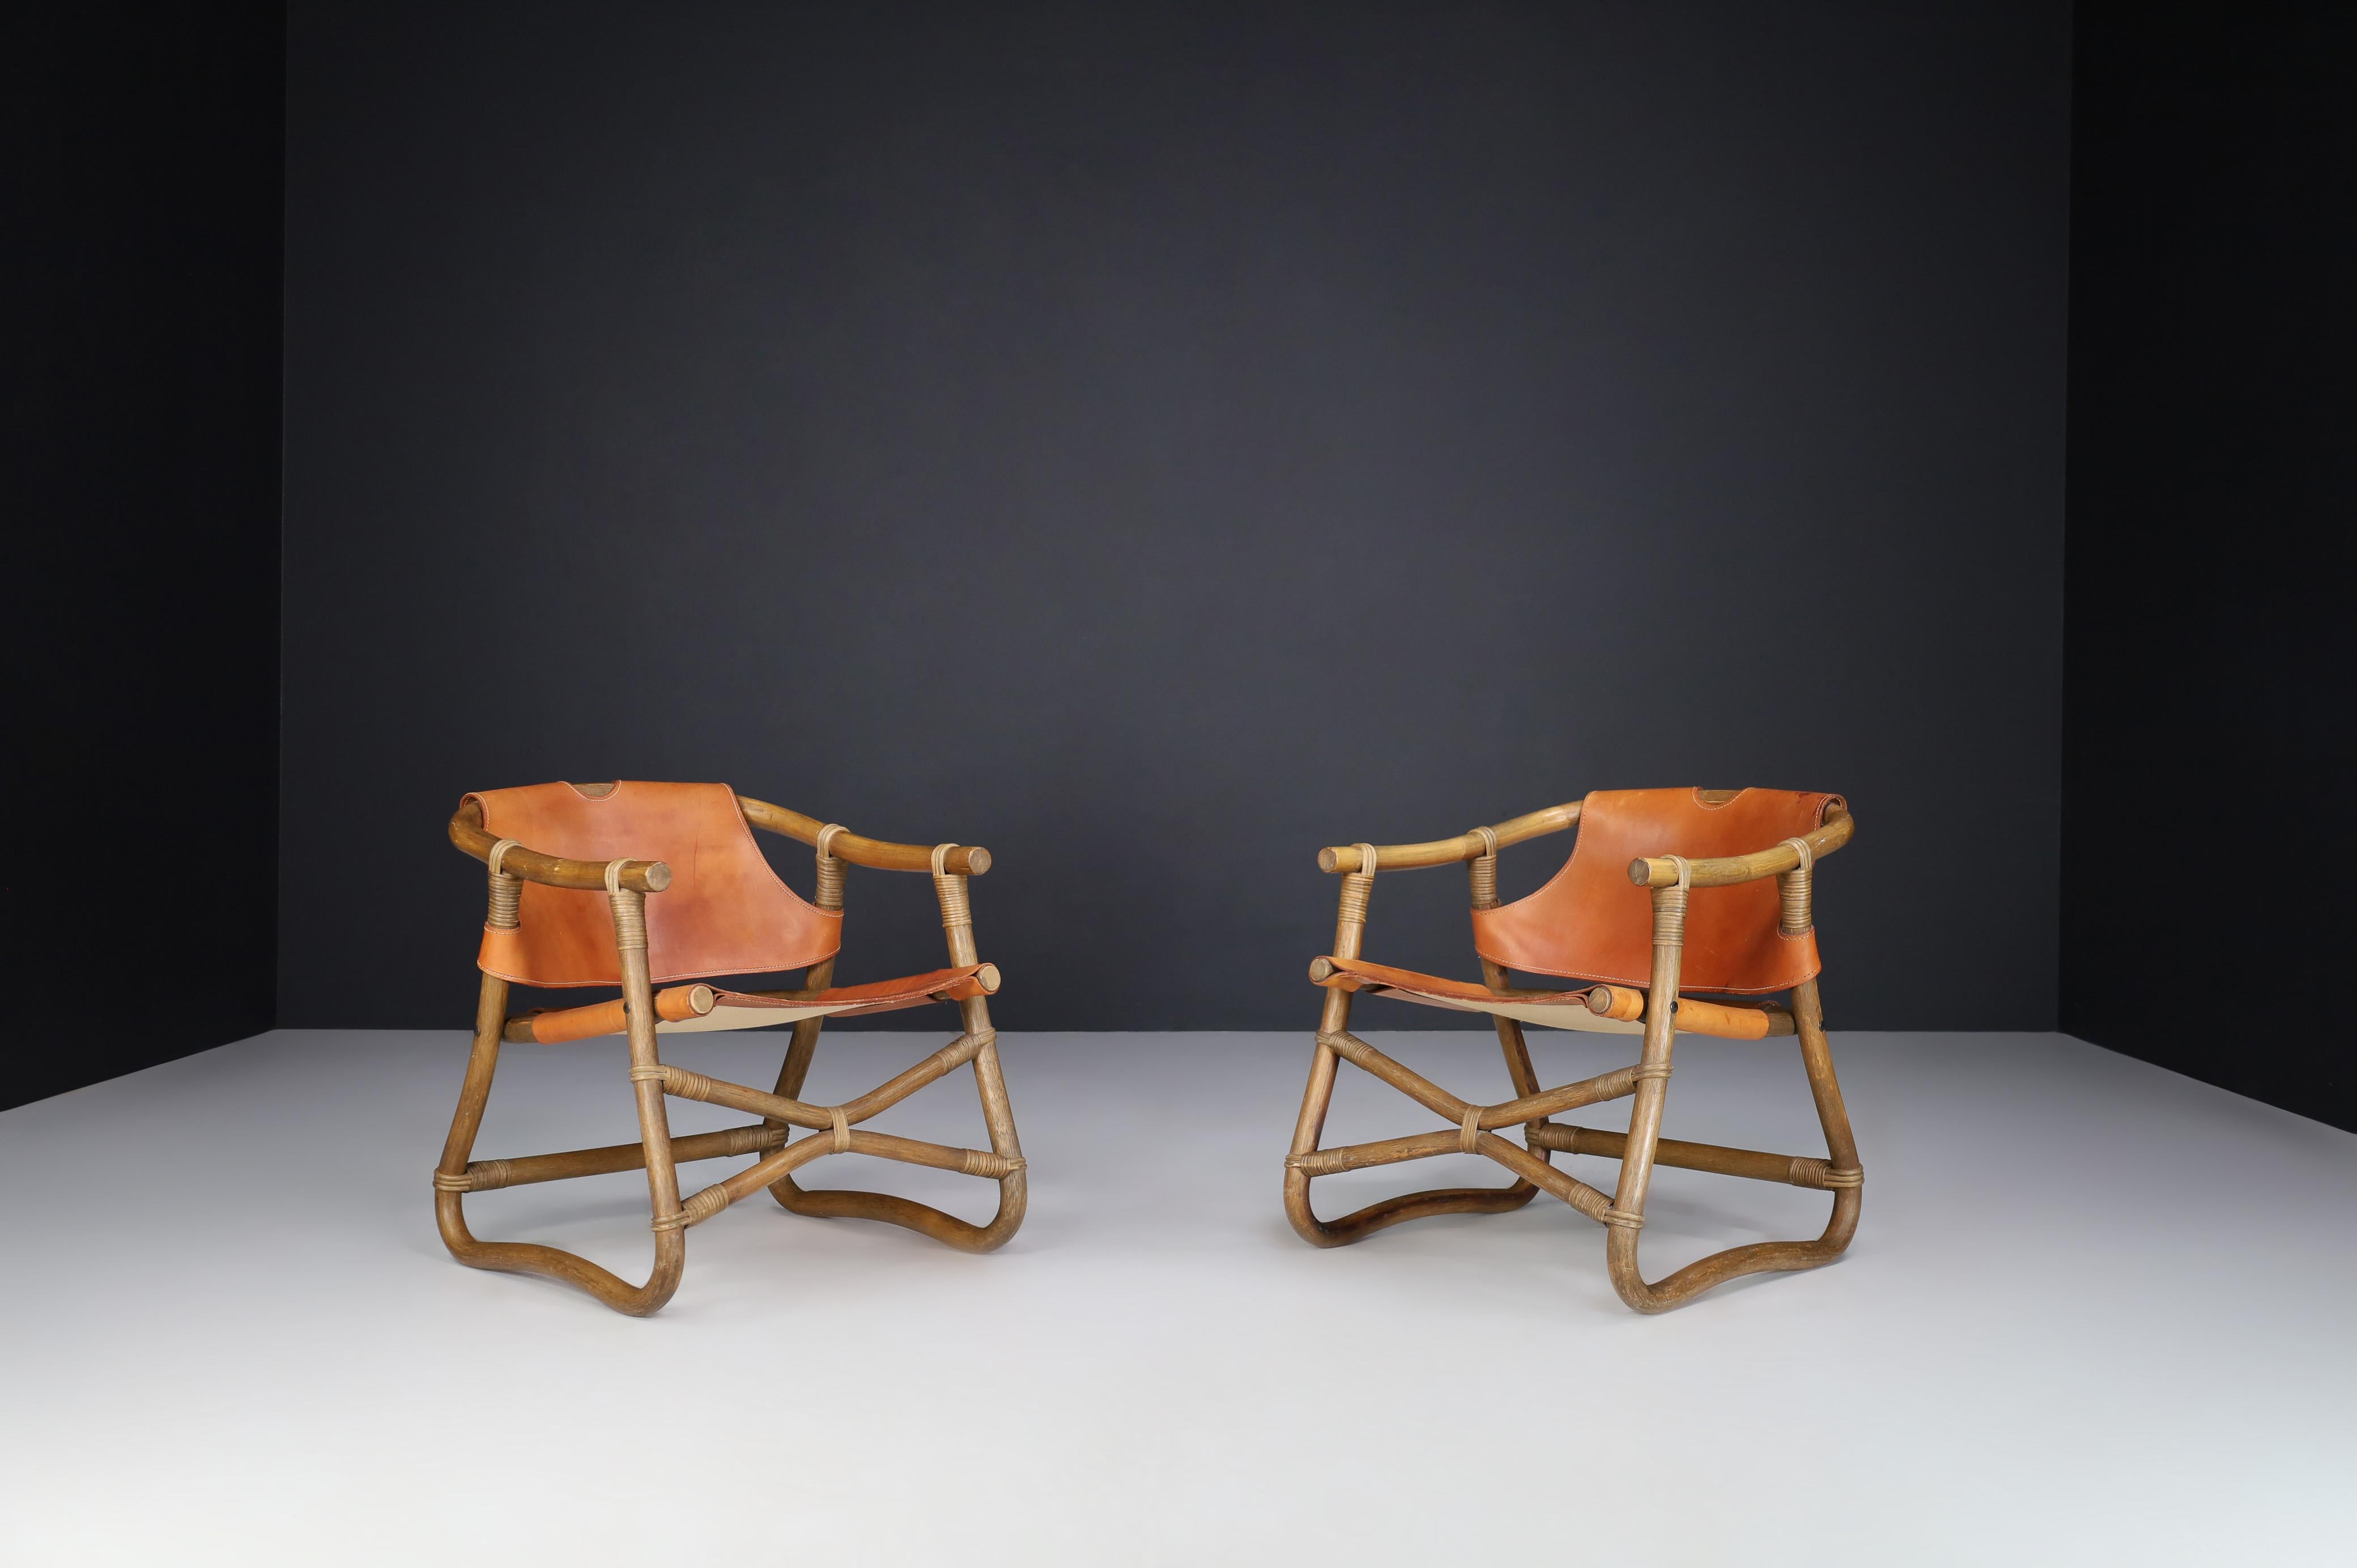 Chaises de salon Esprit safari en cuir cognac par IKEA Suède années 1970.

Ikea a conçu cette chaise longue safari dans les années 1970. Il est fabriqué en bambou et en cuir de selle cognac. Le design et l'aspect de cette chaise d'appoint m'ont